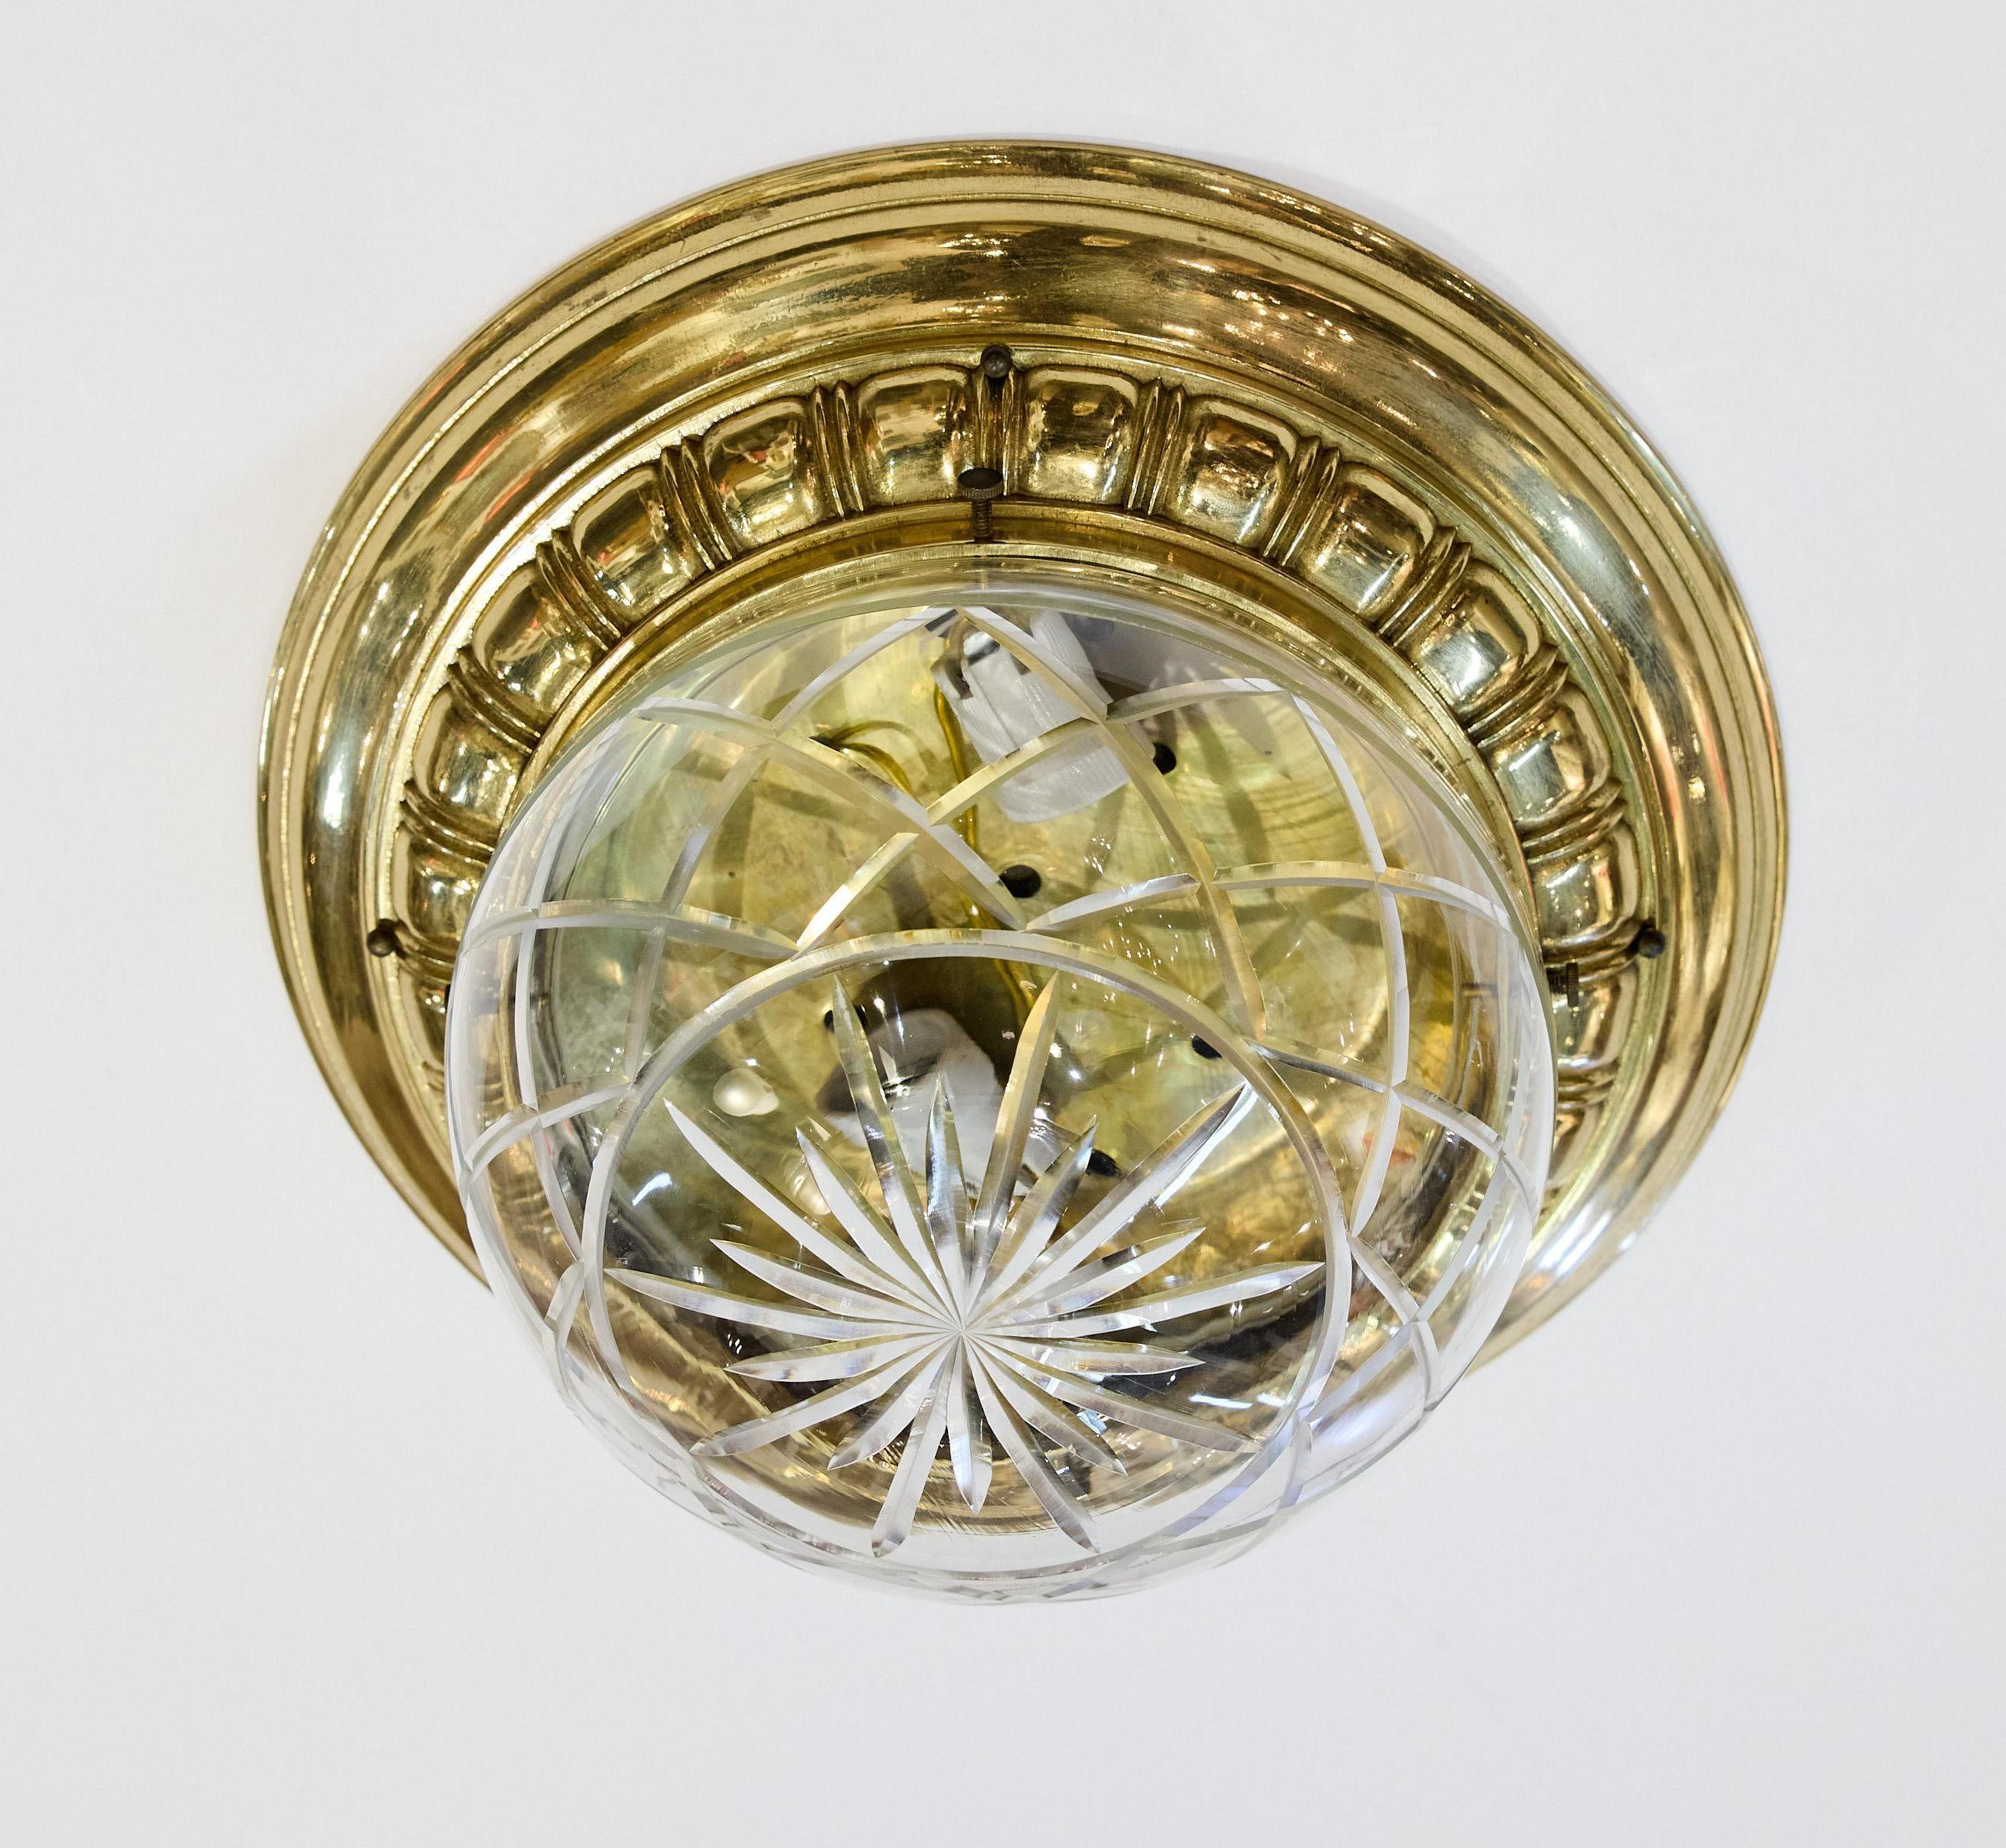 Italienische Einbauleuchte des frühen 20. Jahrhunderts mit schwerem, dekorativem Messingsockel, der eine runde Glaskuppel trägt, die in der Mitte sternförmig ausgeschnitten und von einem Gittermuster aus geschliffenem Glas umgeben ist. Das Glas ist